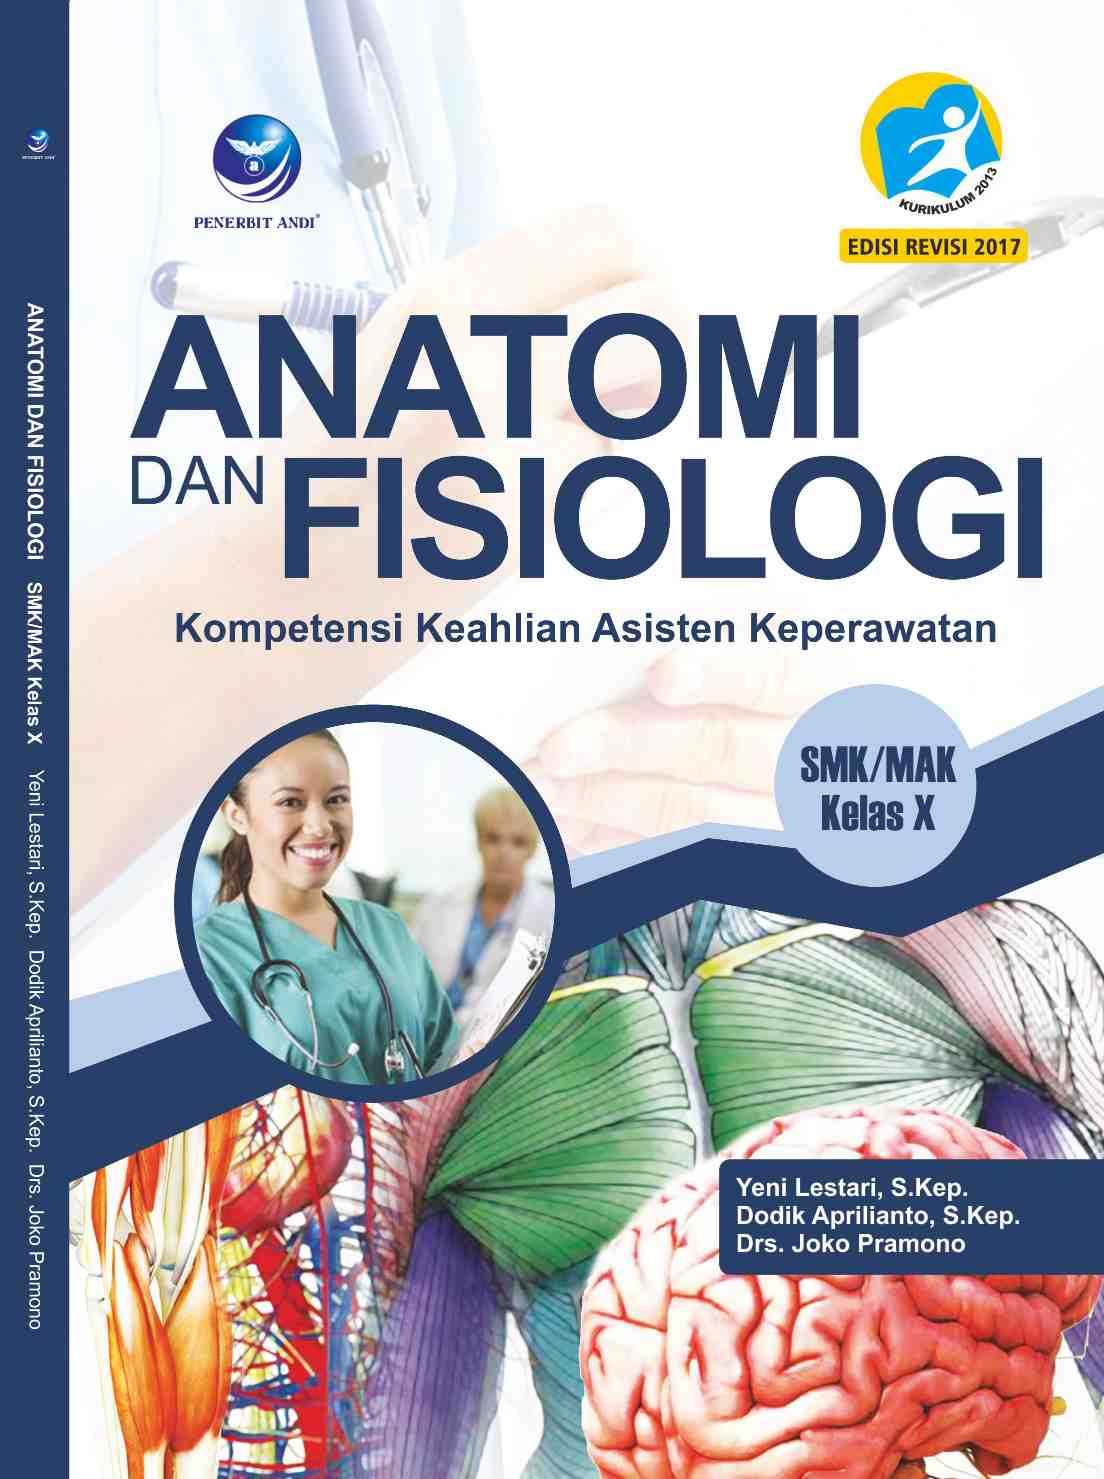 Detail Rekomendasi Buku Anatomi Fisiologi Nomer 22